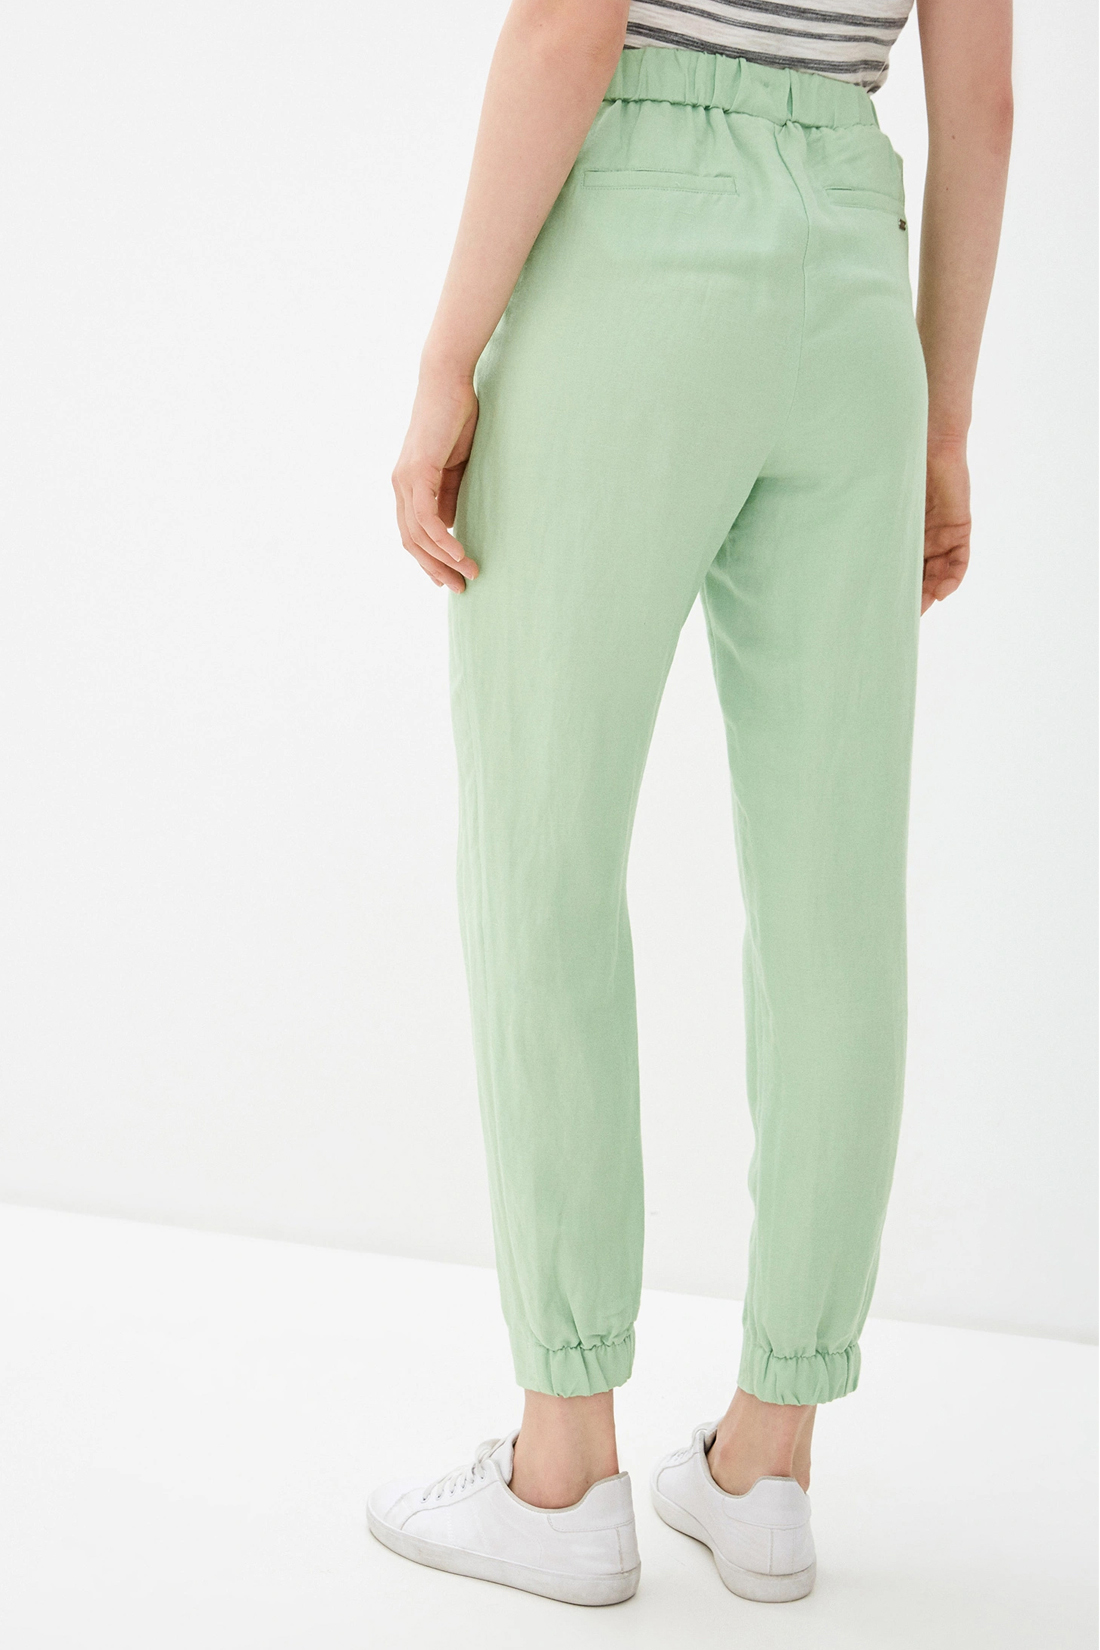 Спортивные брюки женские Baon B290048 зеленые S